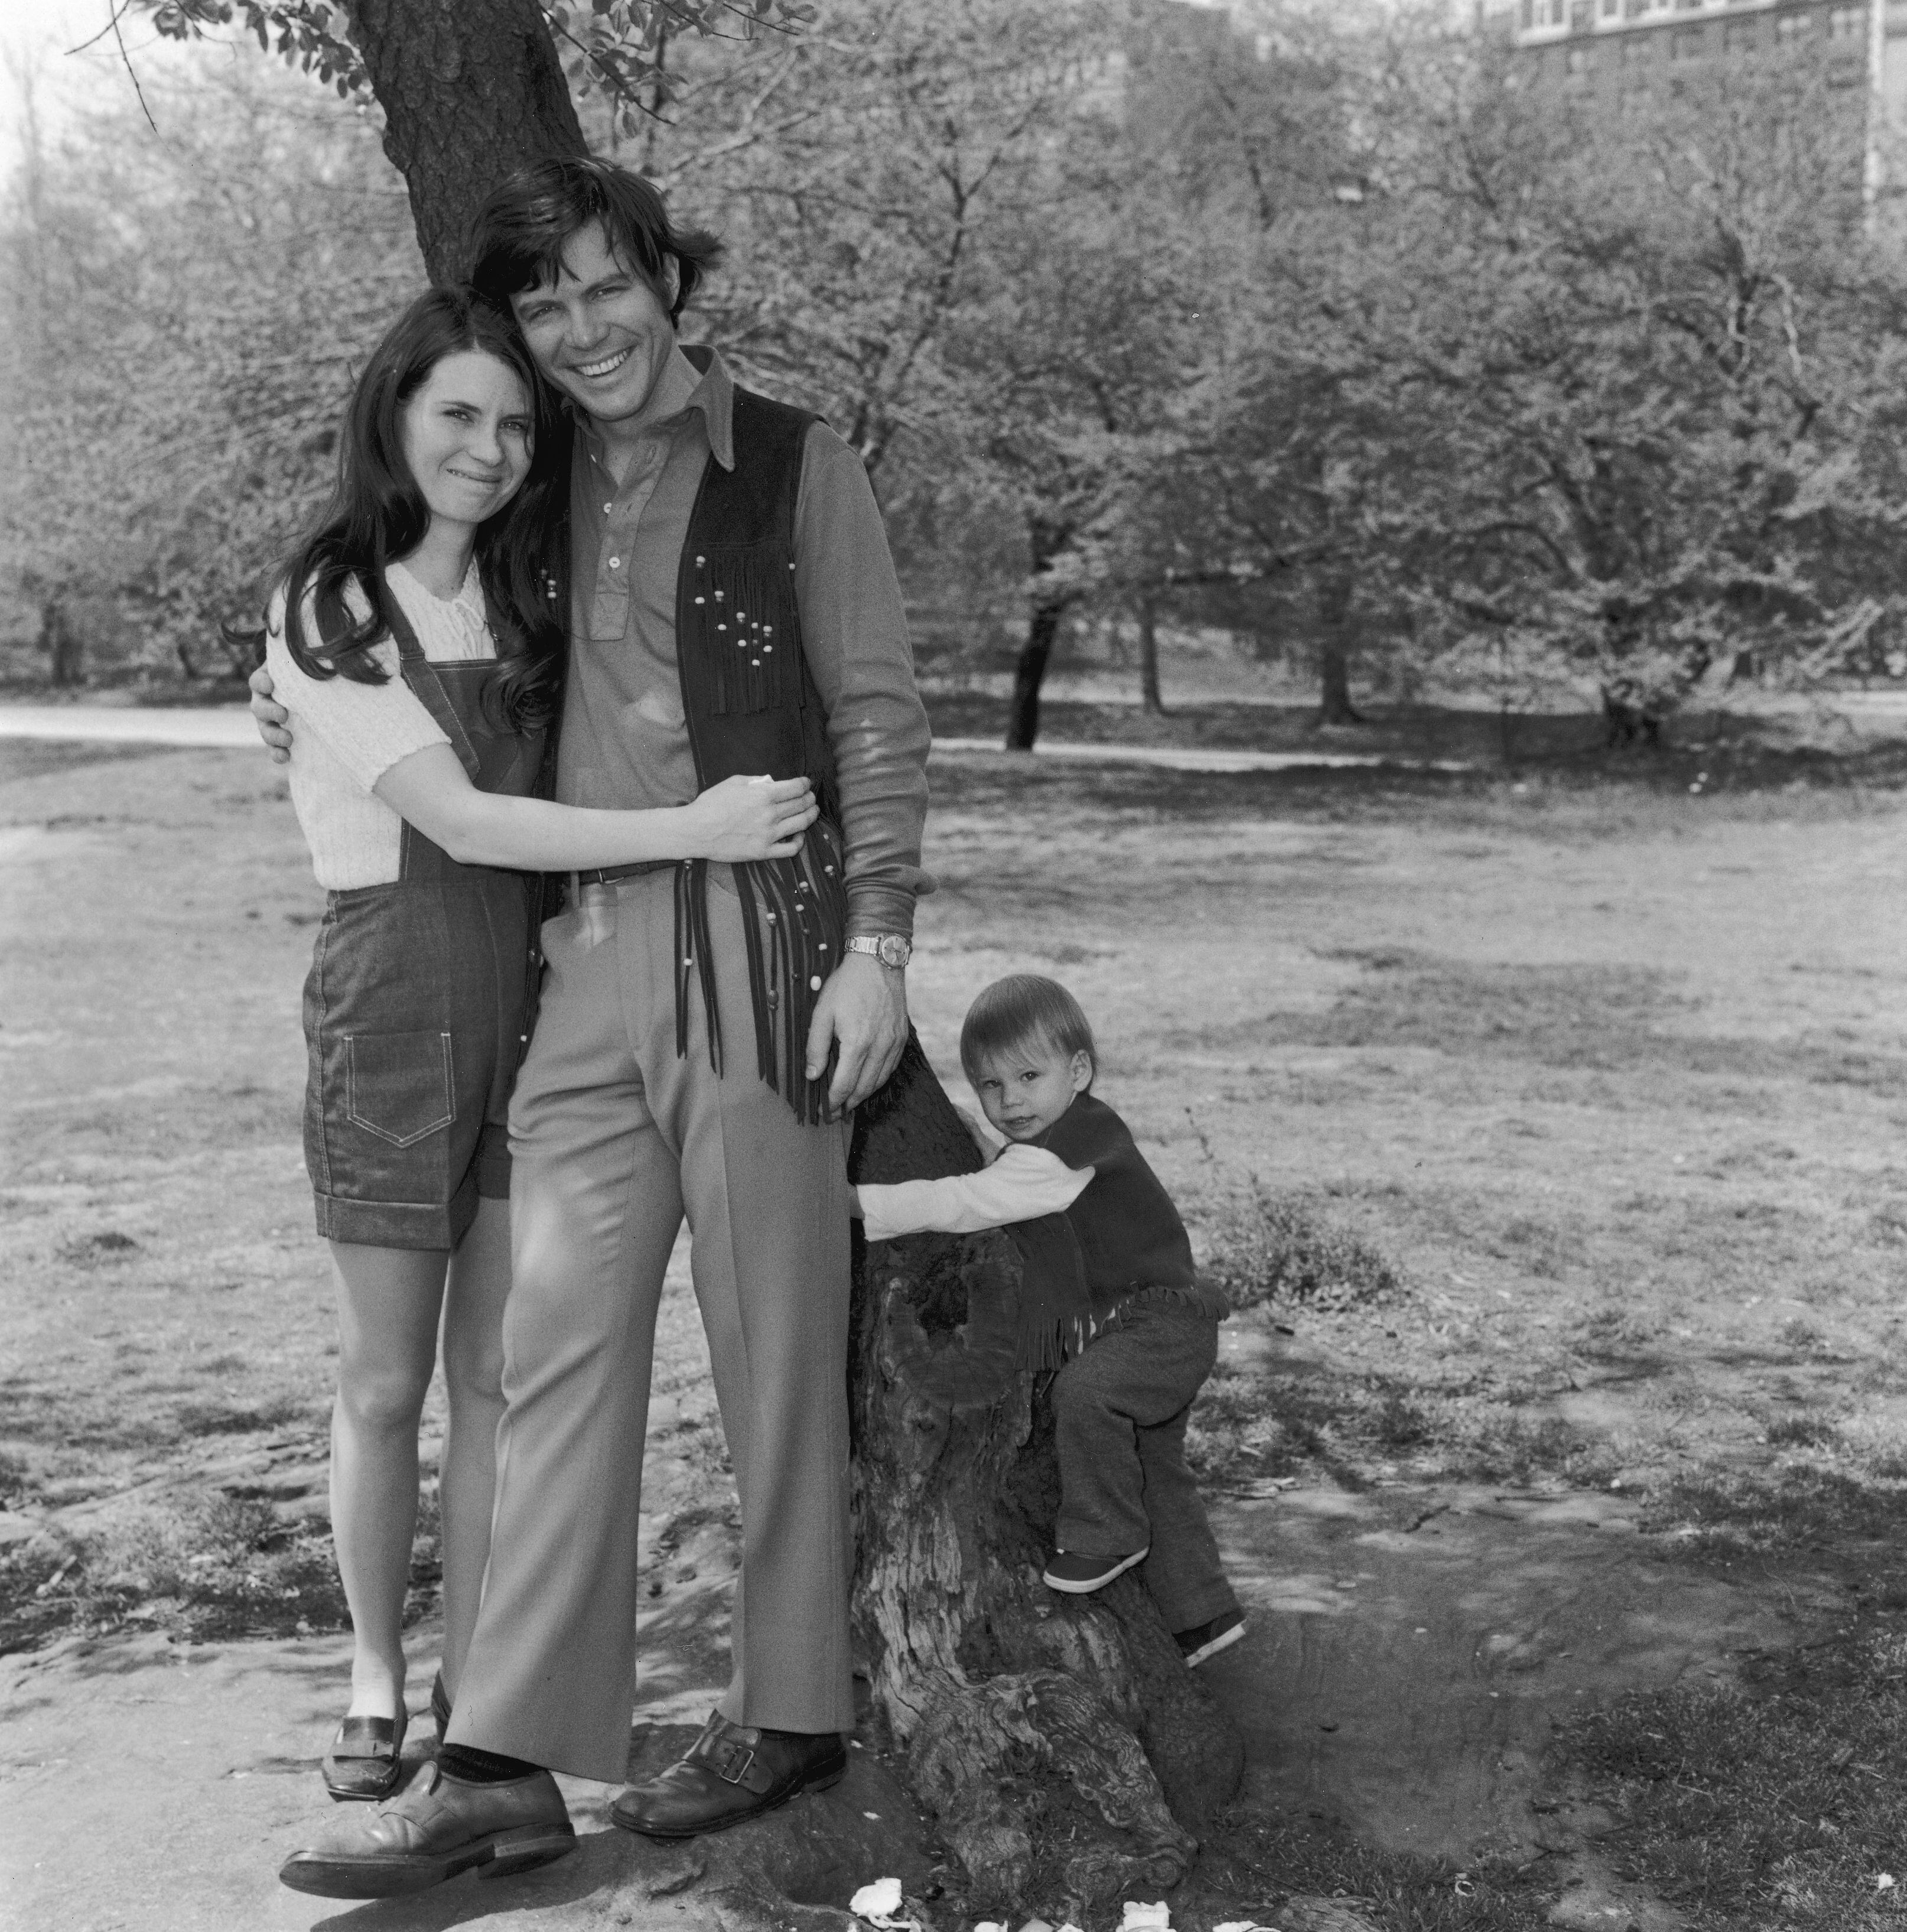 La directora de 'casting' Mary Jo Slater y el actor Michael Hawkins con su hijo, Christian Slater, en Central Park (Nueva York) en 1973.